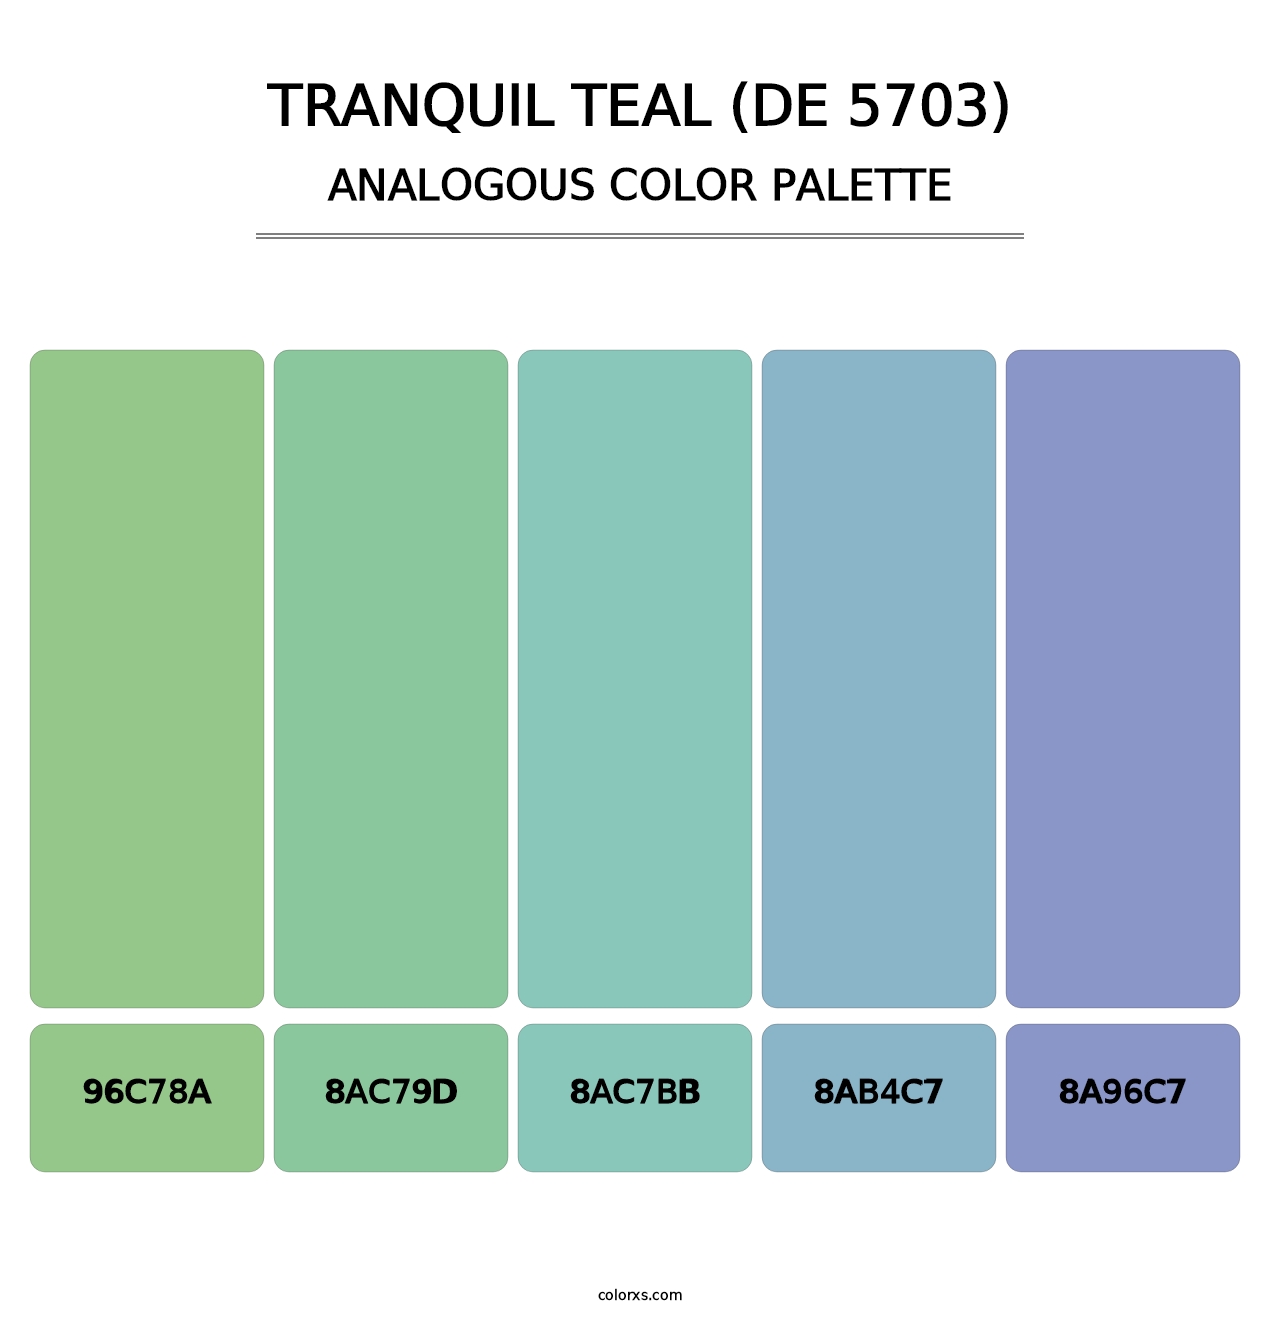 Tranquil Teal (DE 5703) - Analogous Color Palette